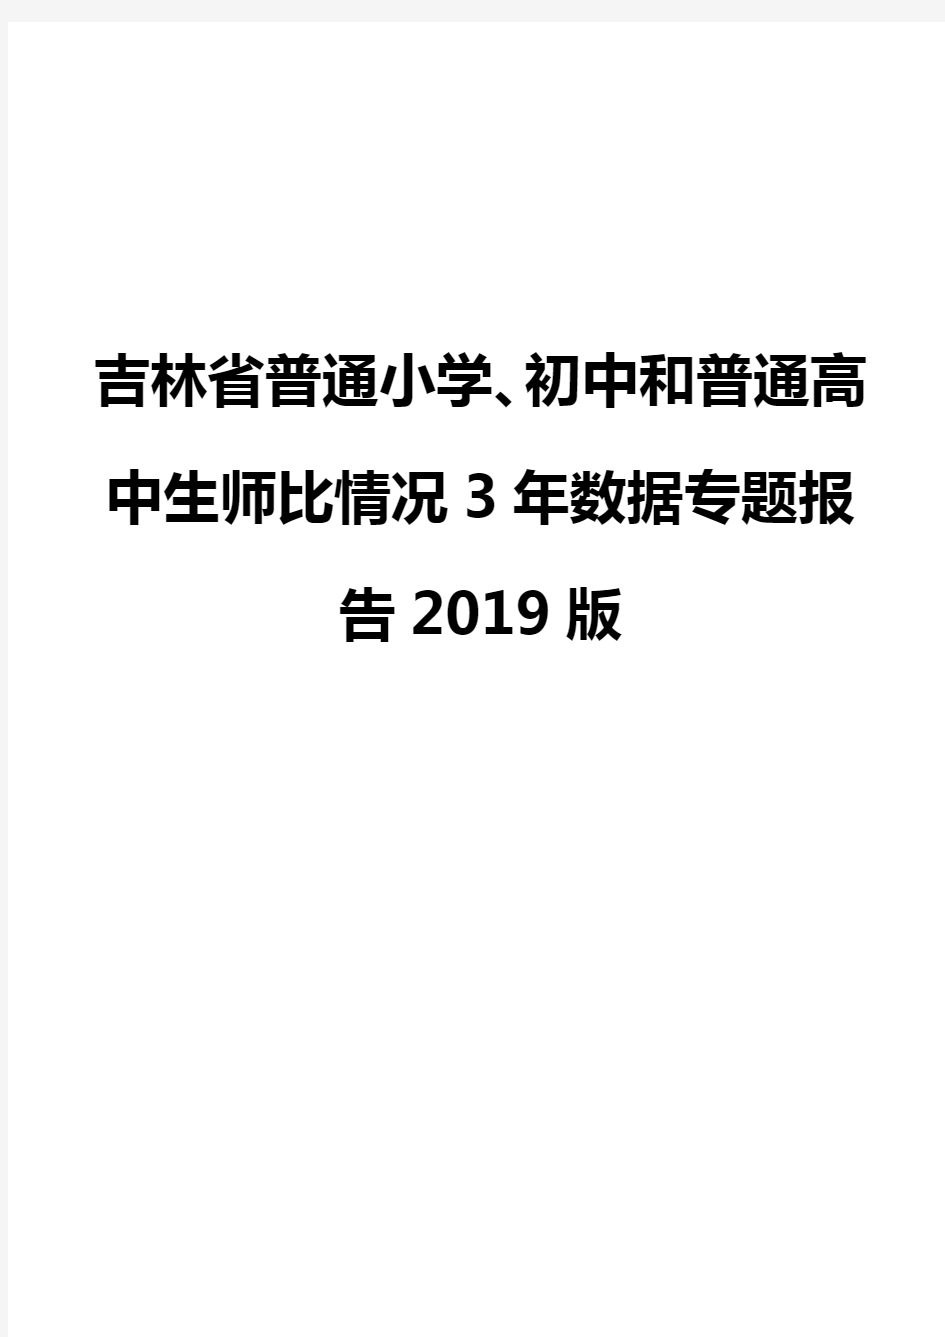 吉林省普通小学、初中和普通高中生师比情况3年数据专题报告2019版